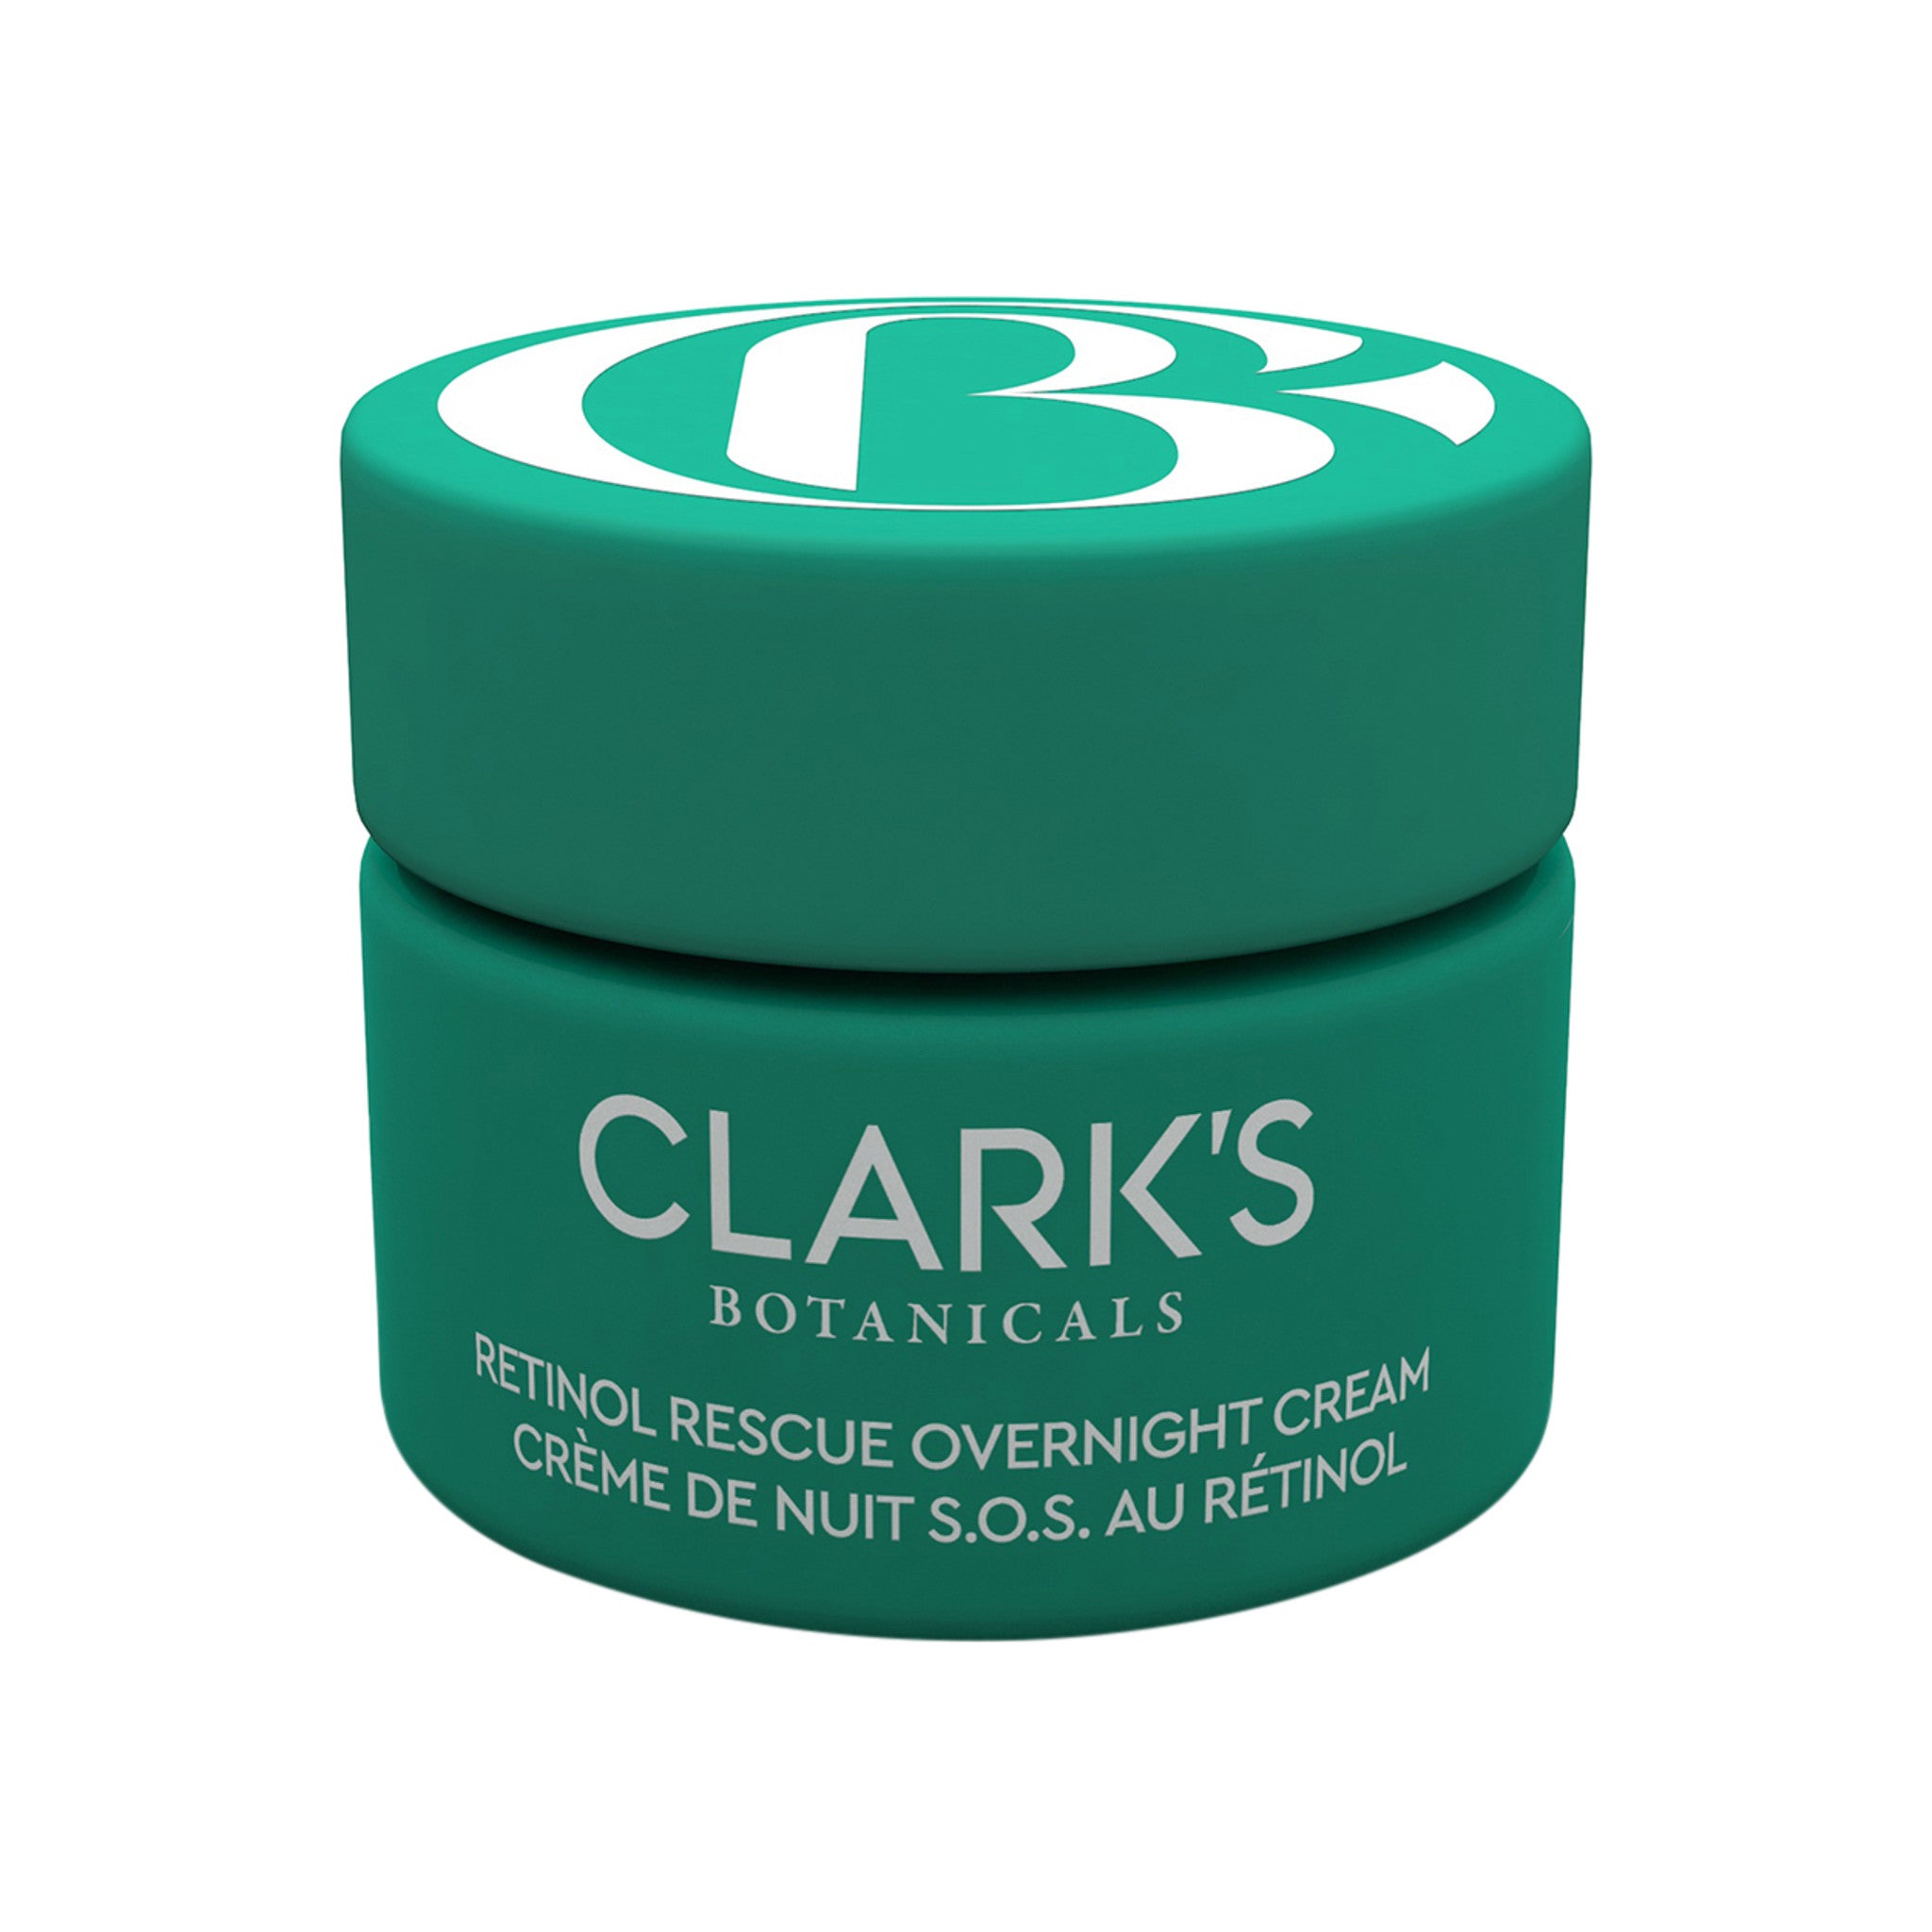 Clark’s Botanicals Retinol Rescue Overnight Cream main image.